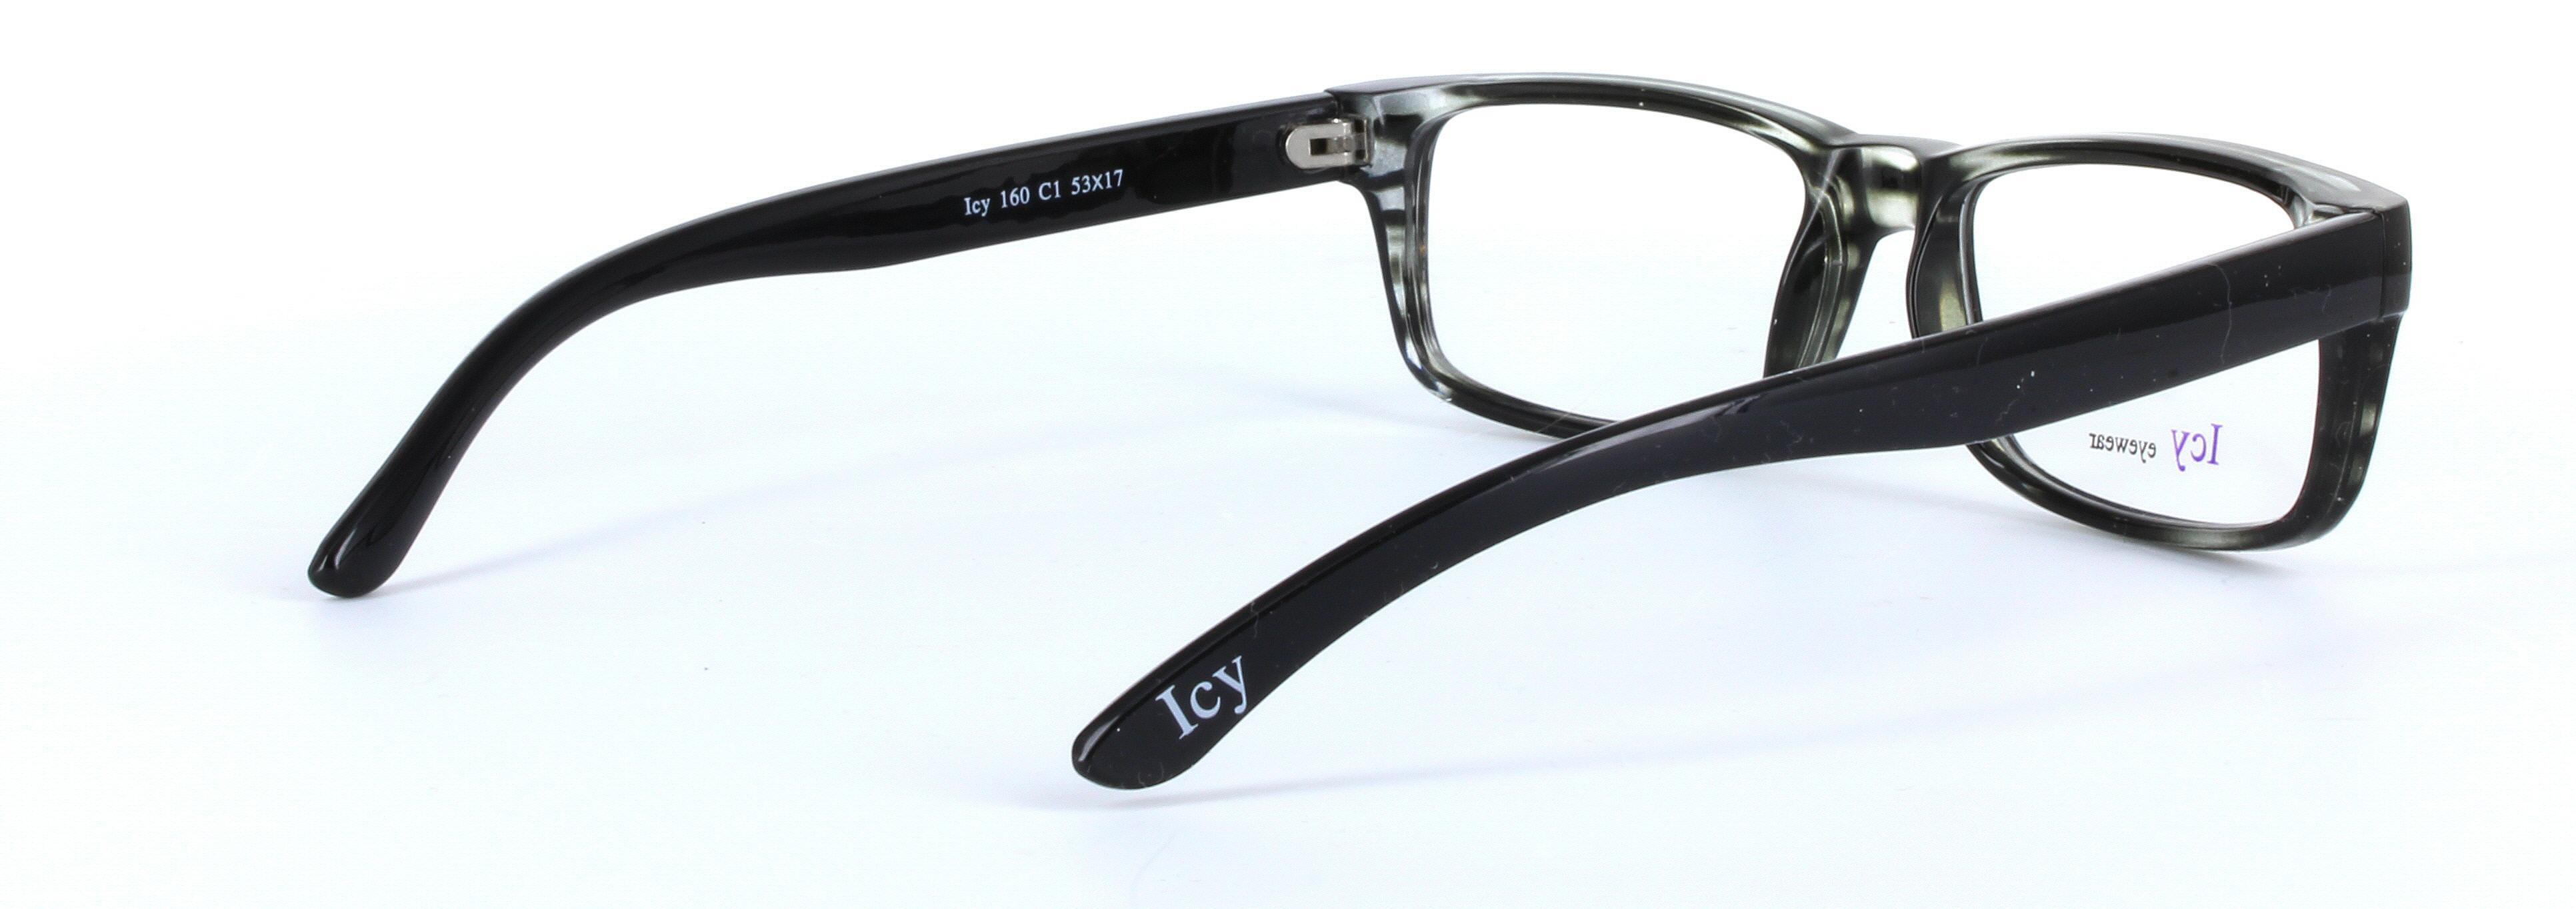 ICY 160 Grey Full Rim Rectangular Square Plastic Glasses - Image View 4